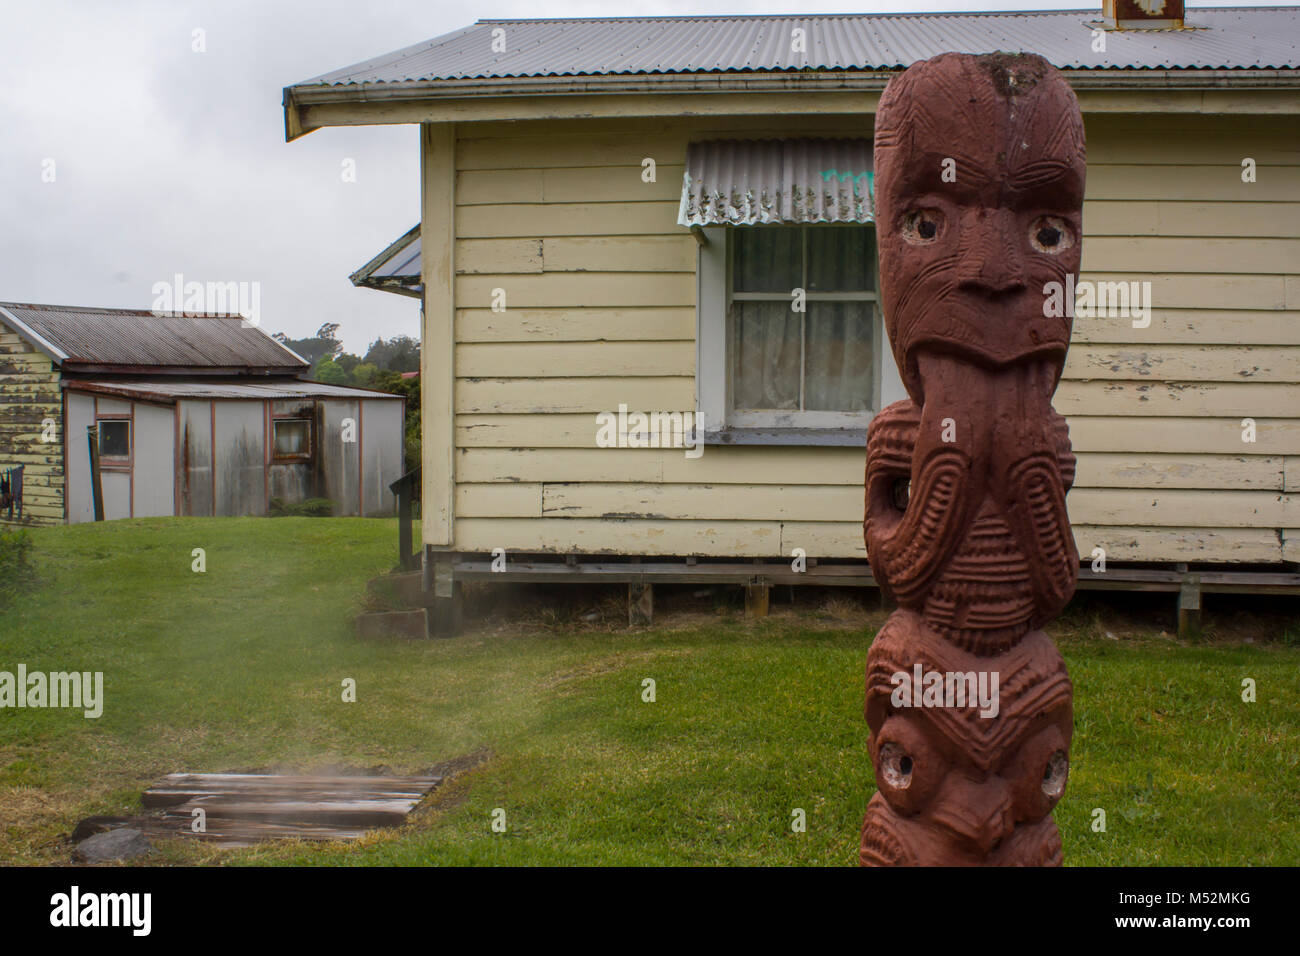 Lebenden Maori Dorf, Maori Holzschnitzerei Skulptur und Häuser im Hintergrund Stockfoto